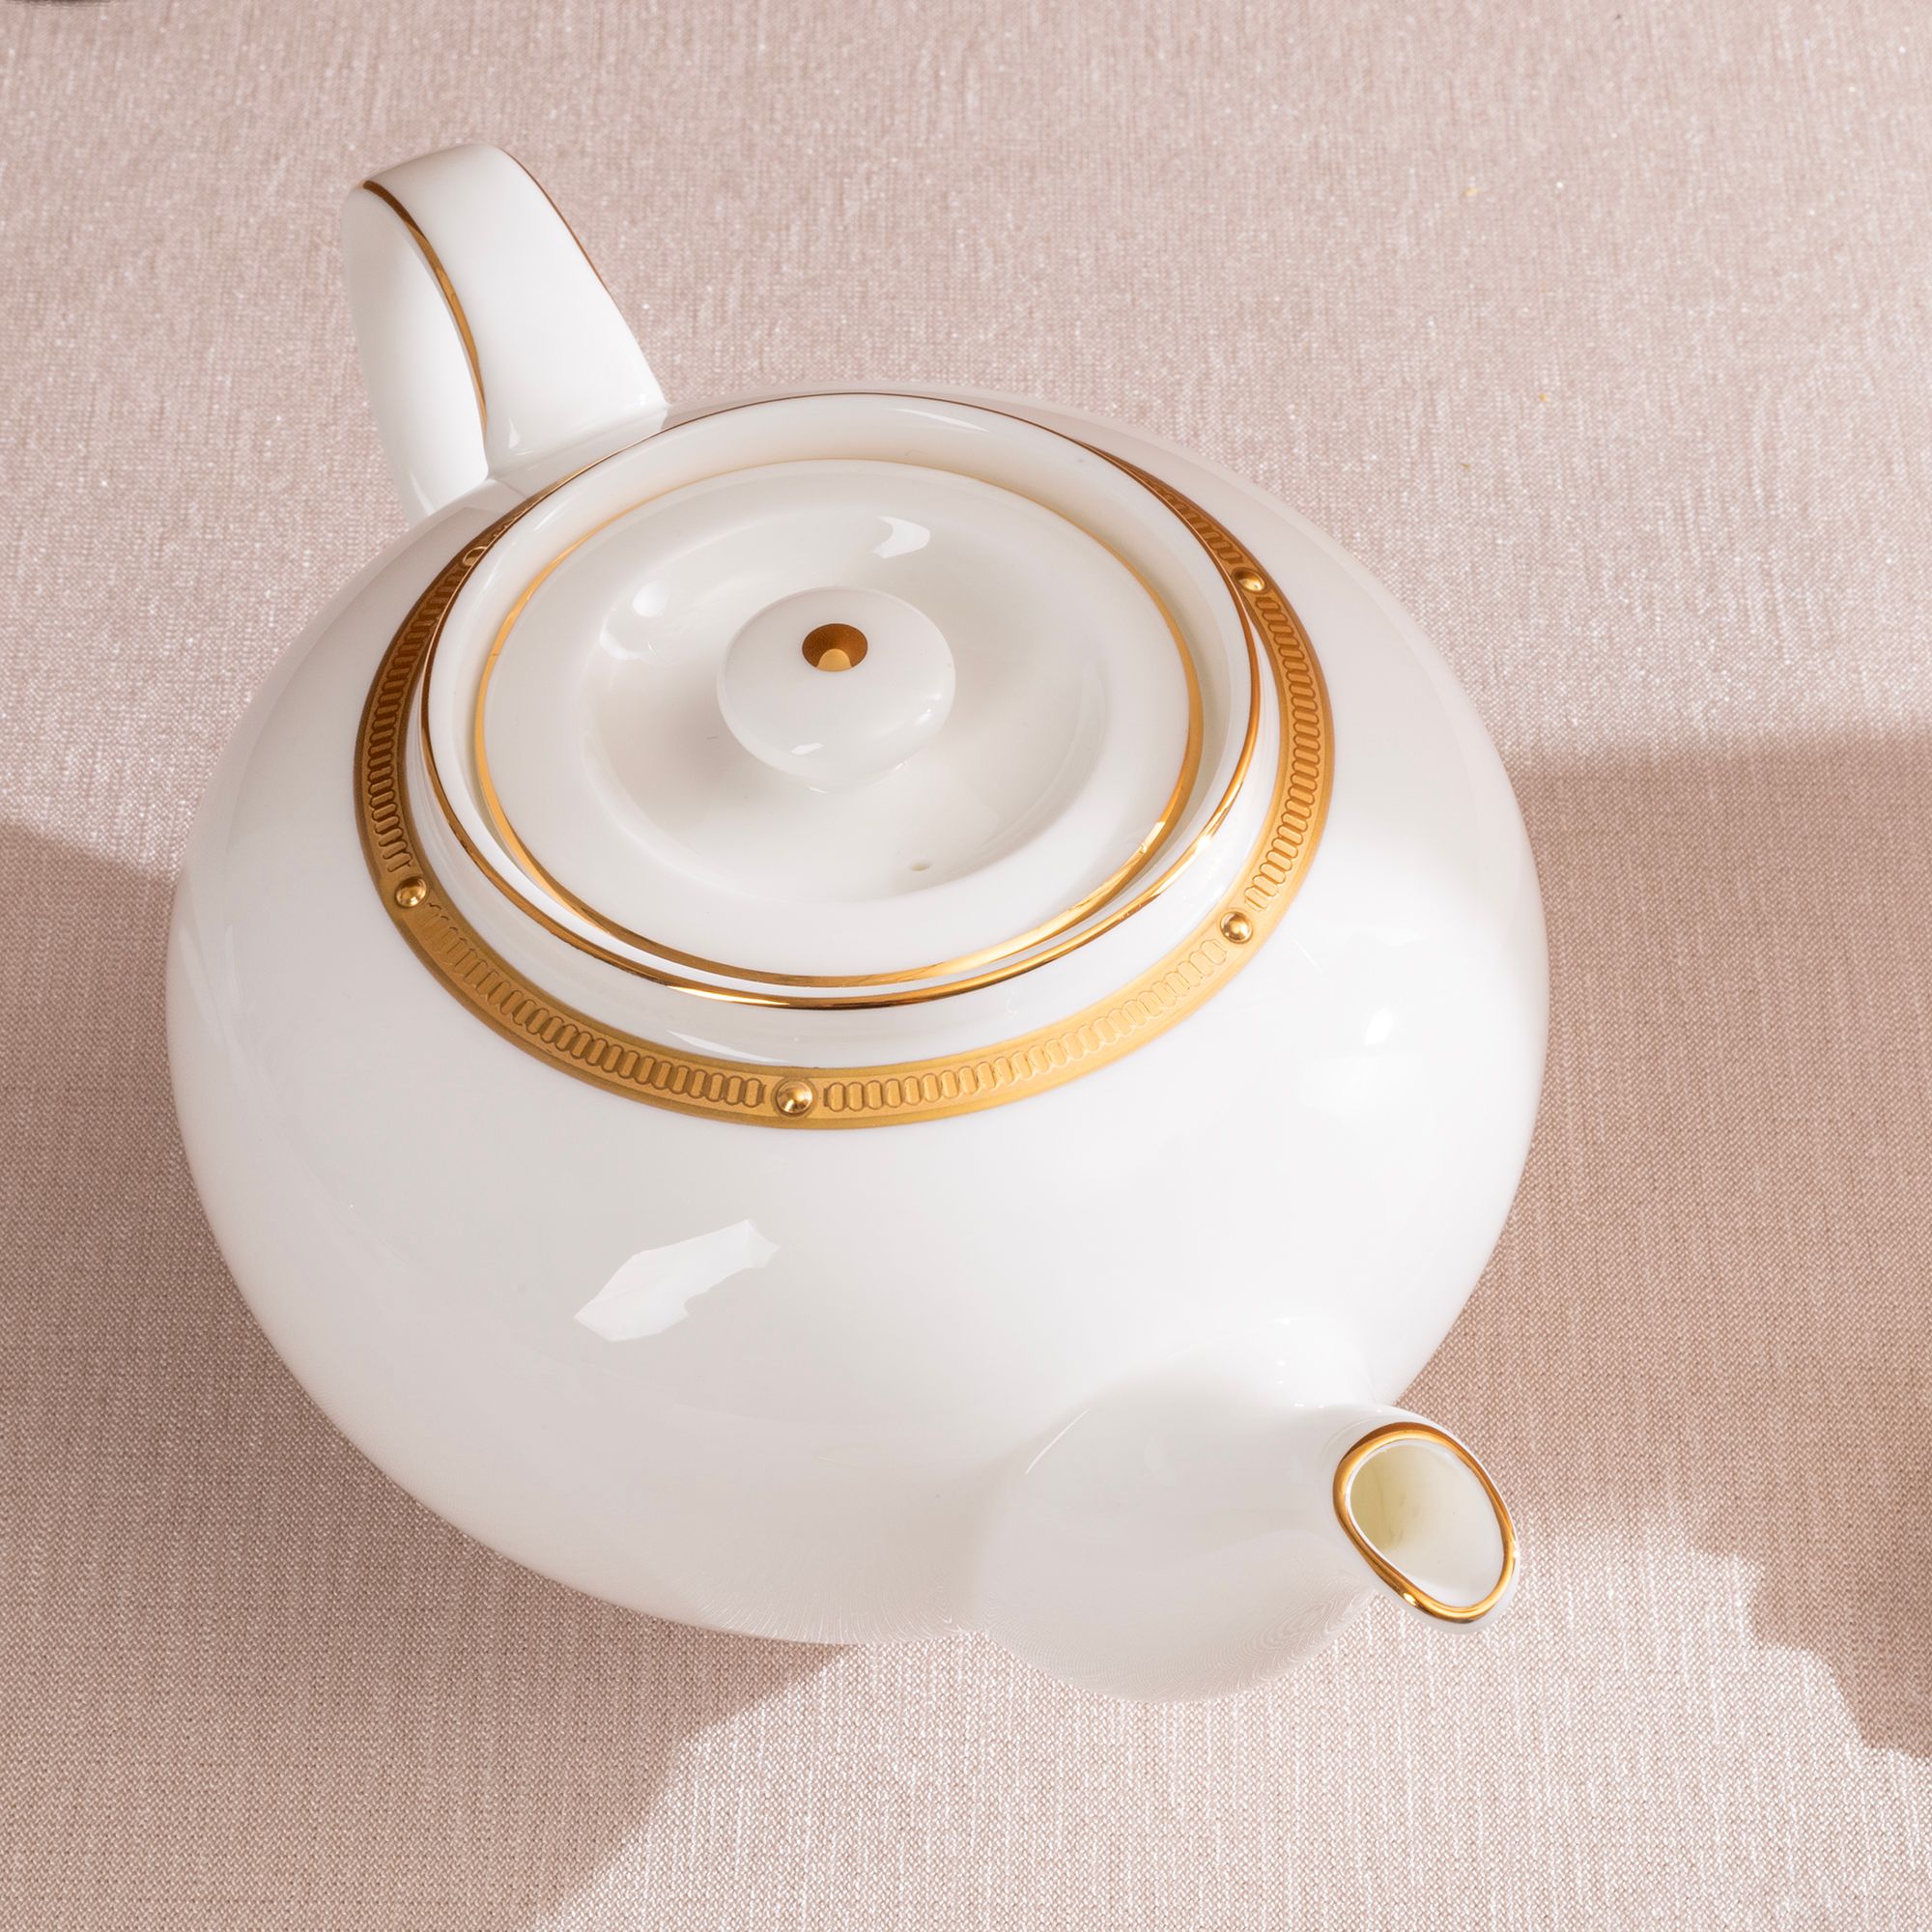  Bộ ấm chén uống trà 13 món Châu Á (ấm 950ml, tách 145ml) | Rochelle Gold 4796L-T014SA 